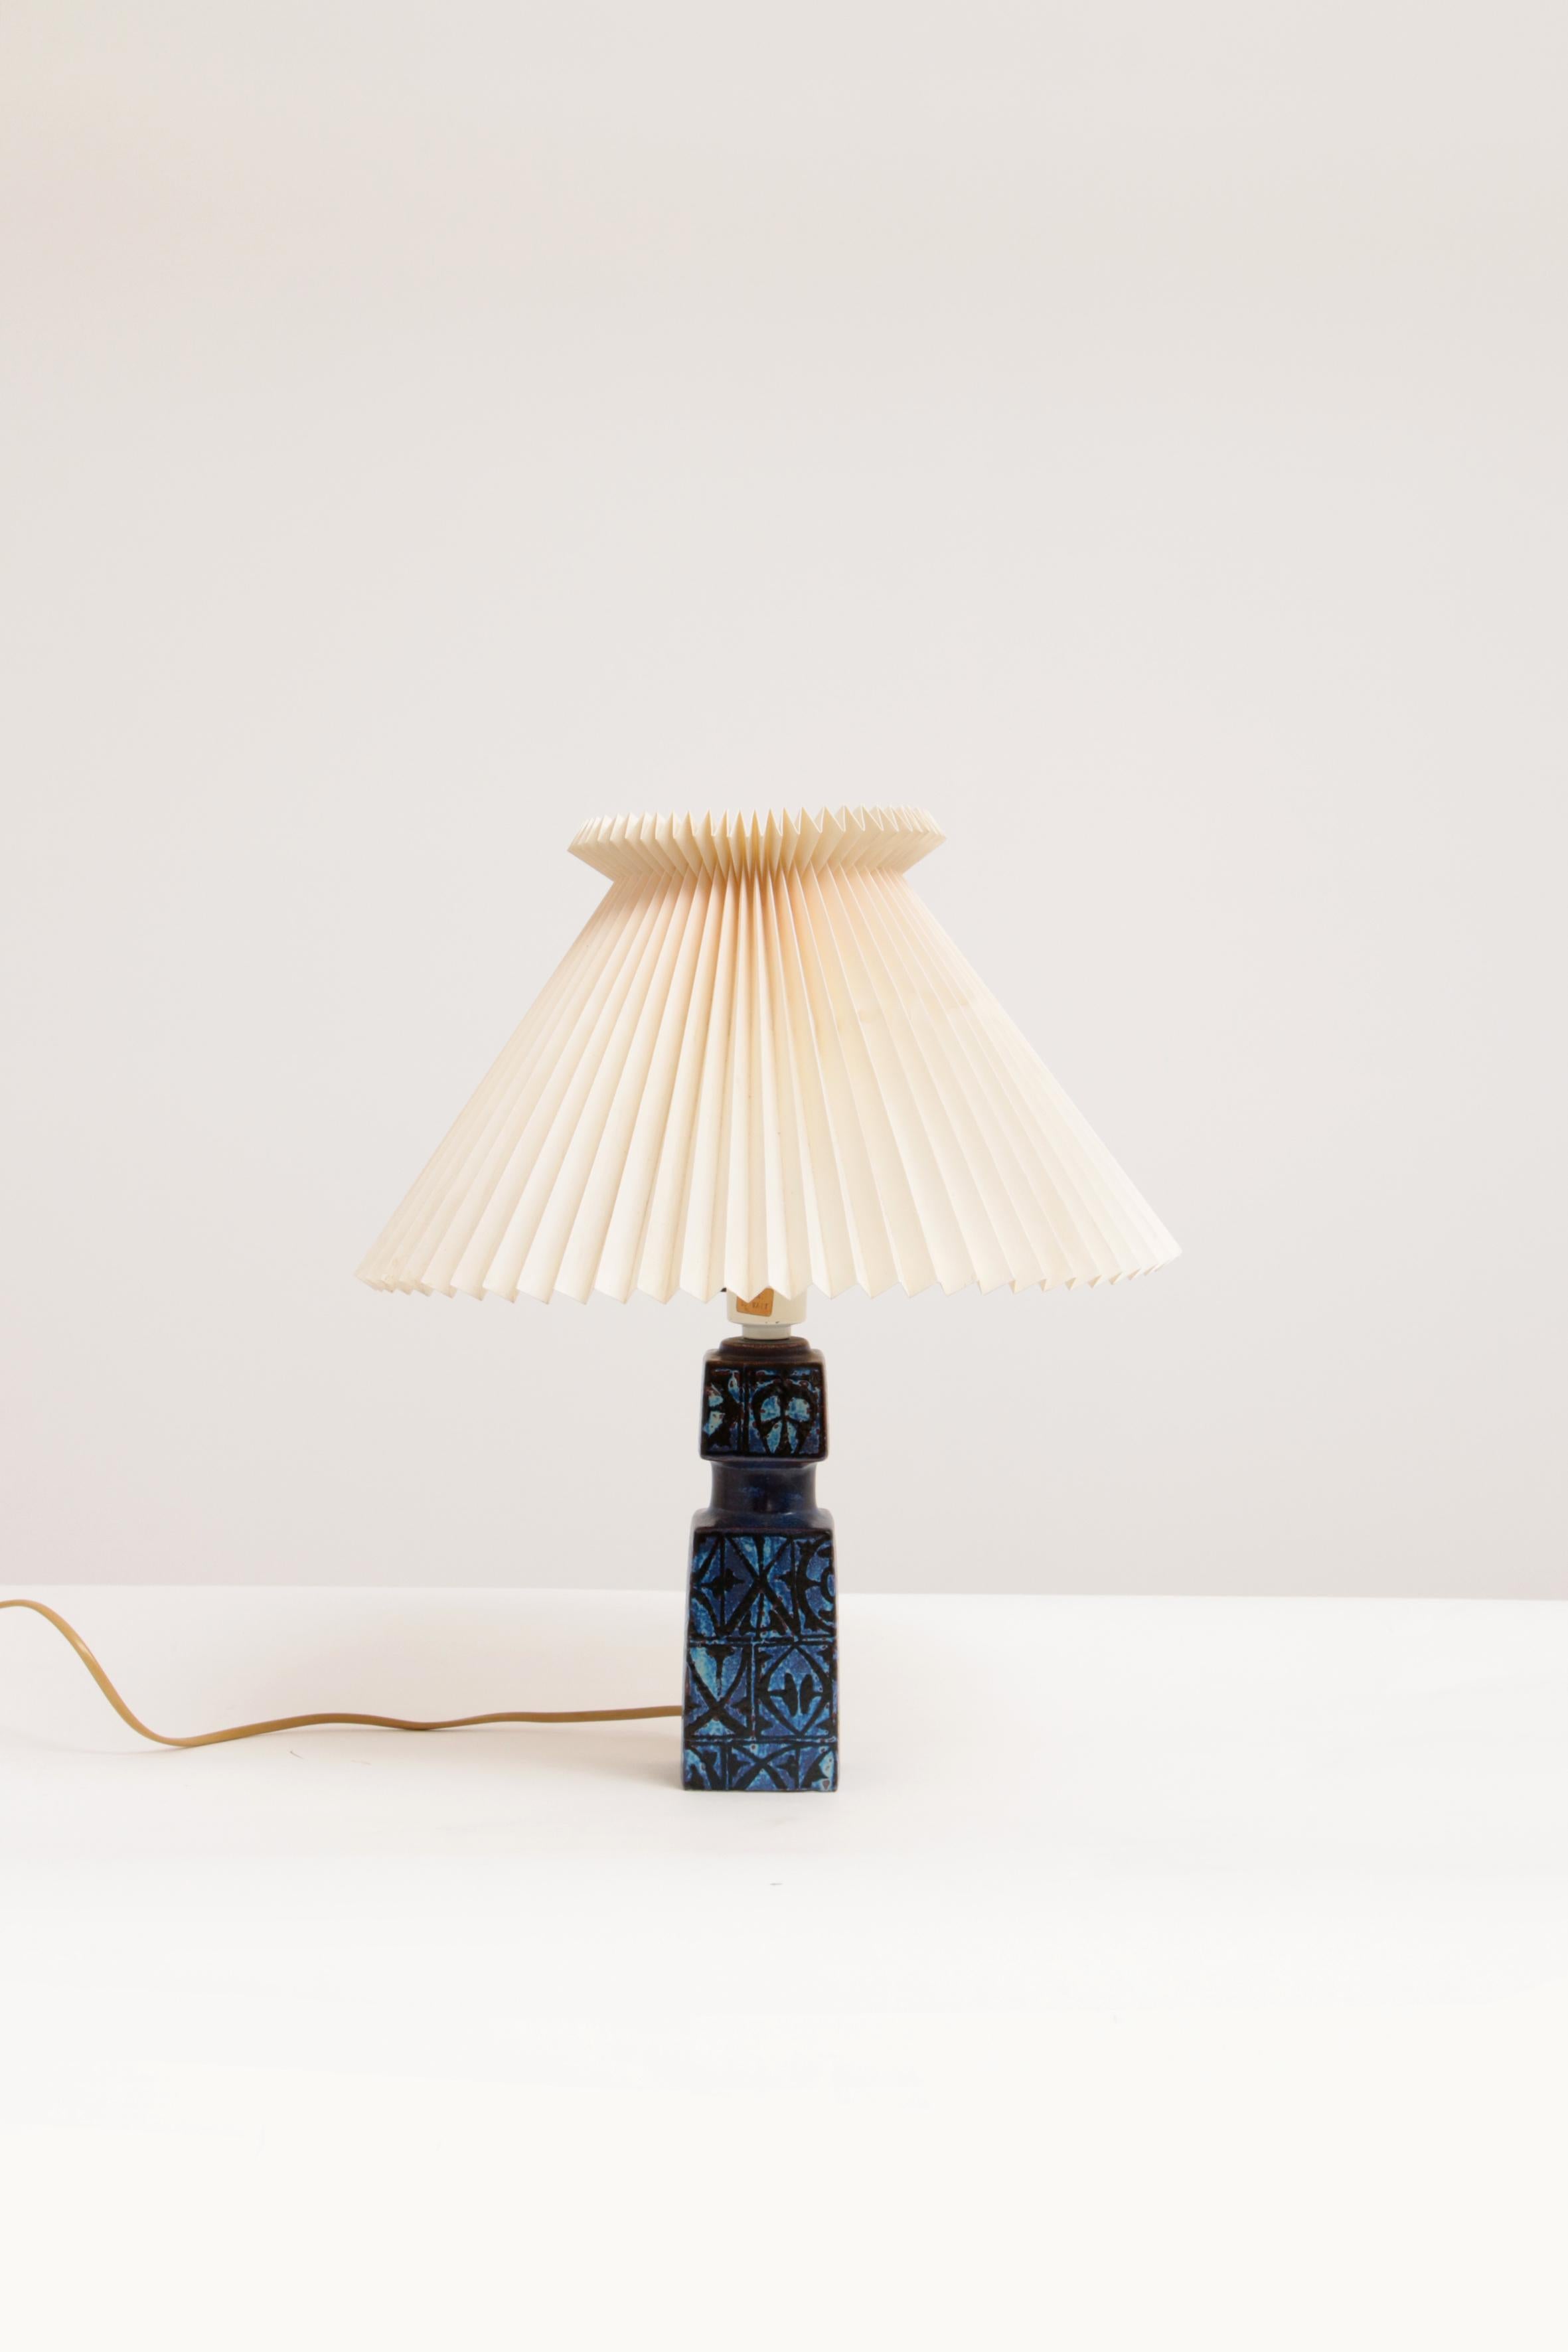 Lampe de table en céramique conçue par Nils Thorsson pour Royal Copenhagen et Fog & Mørup, vers 1970. Modèle Baca.

Il présente un décor abstrait tactile avec du noir sur un bleu presque violet. La hauteur indiquée s'entend avec la lampe et sans